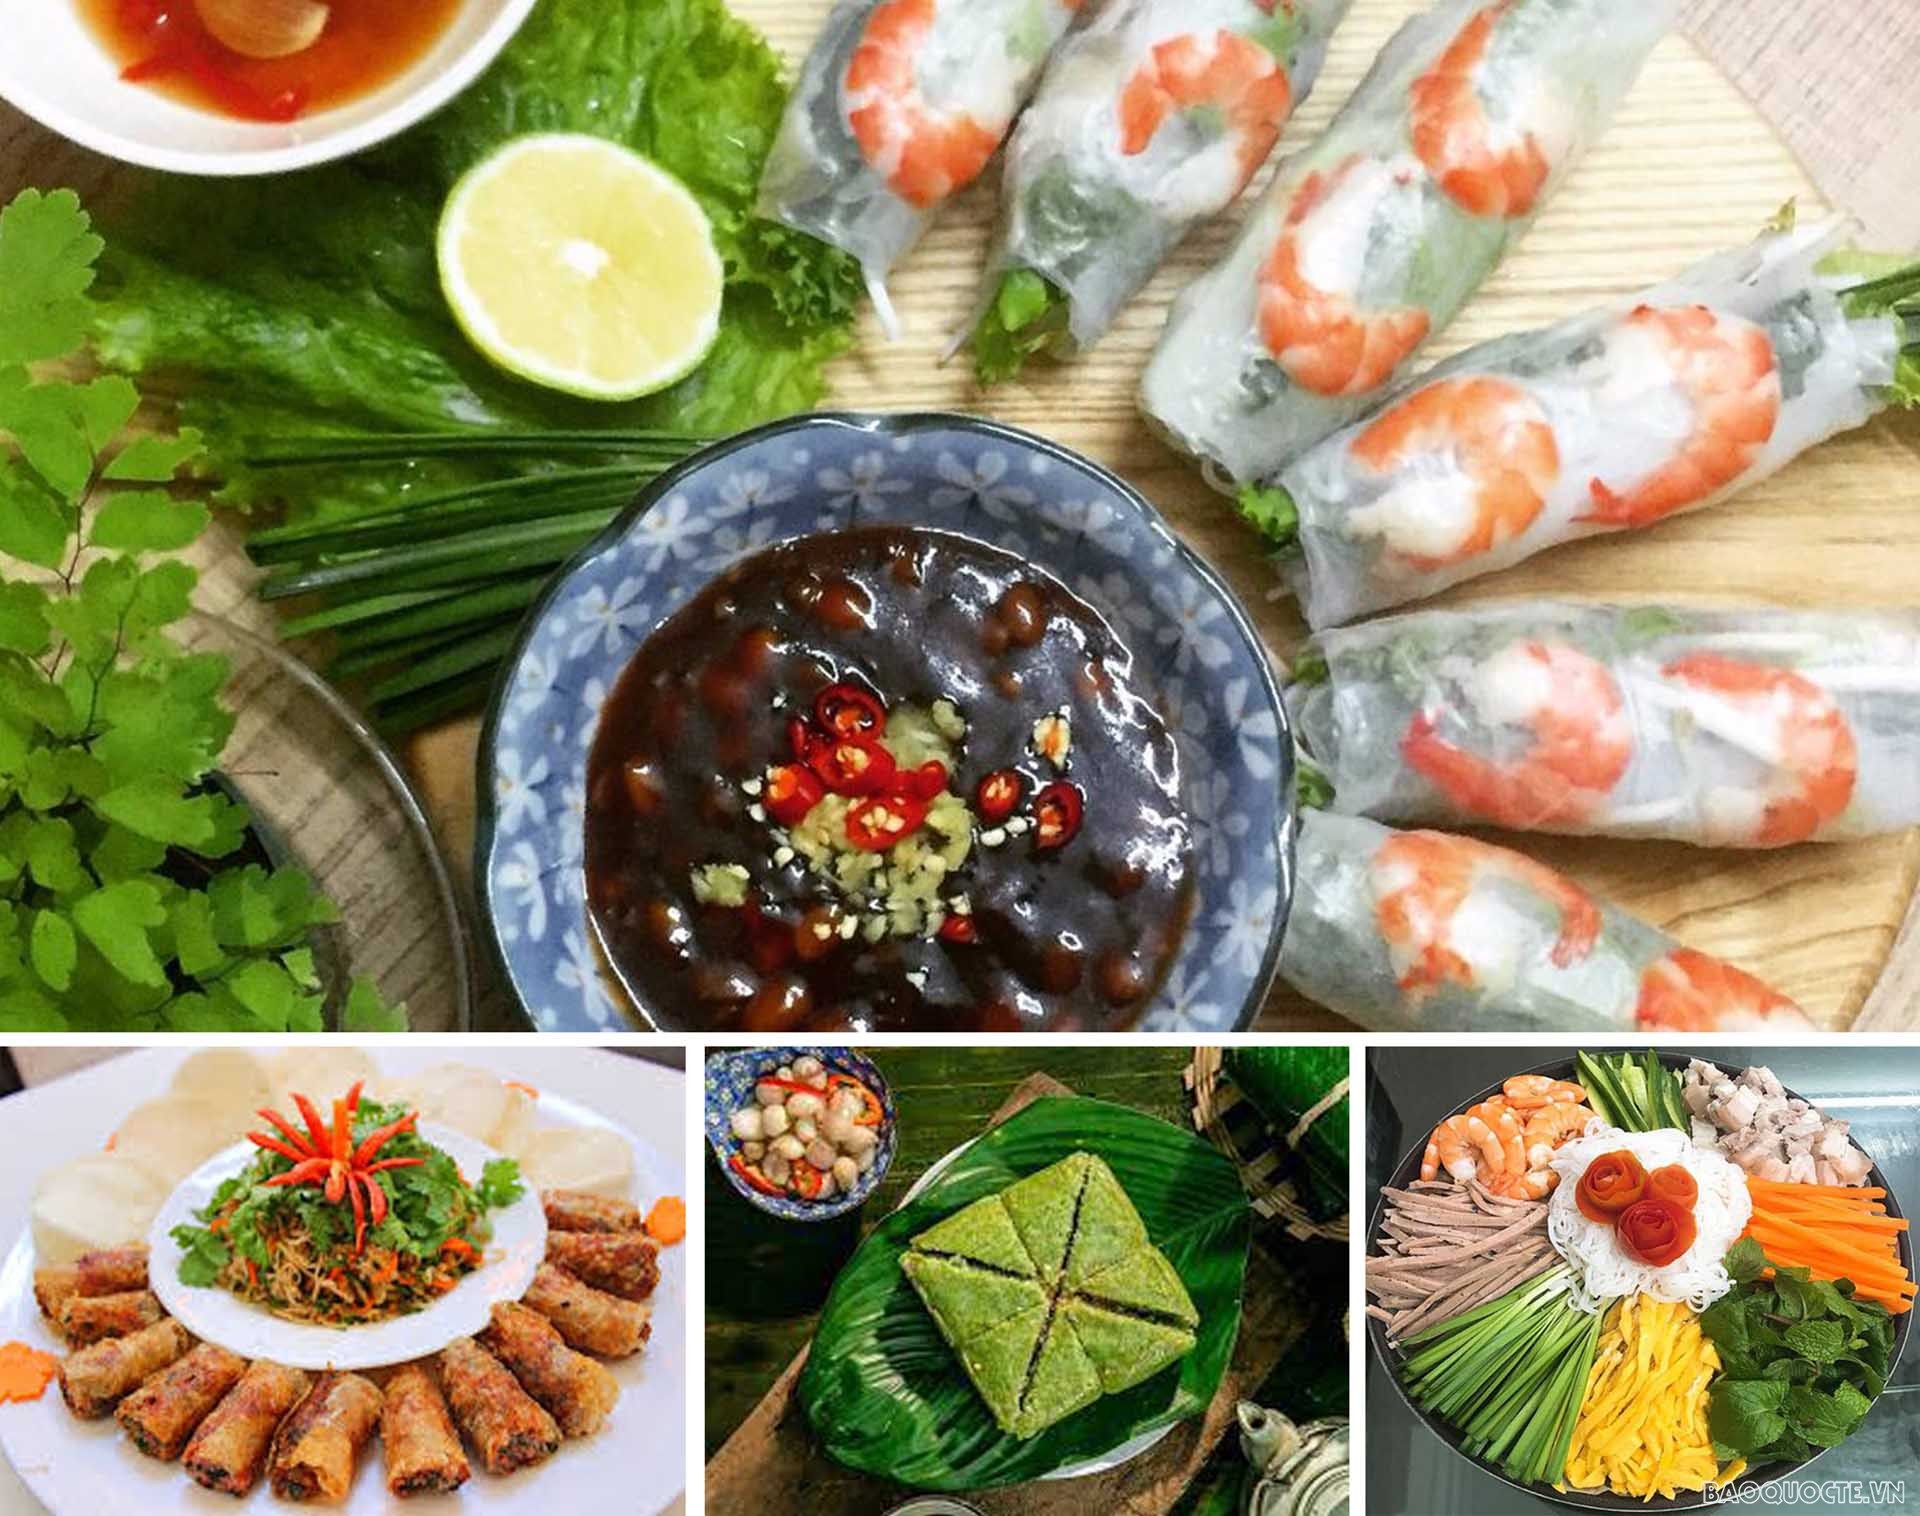 Những món ăn mang hương vị đậm chất truyền thống của Việt Nam như nem rán, nem sống cuốn tôm thịt, bánh chưng…